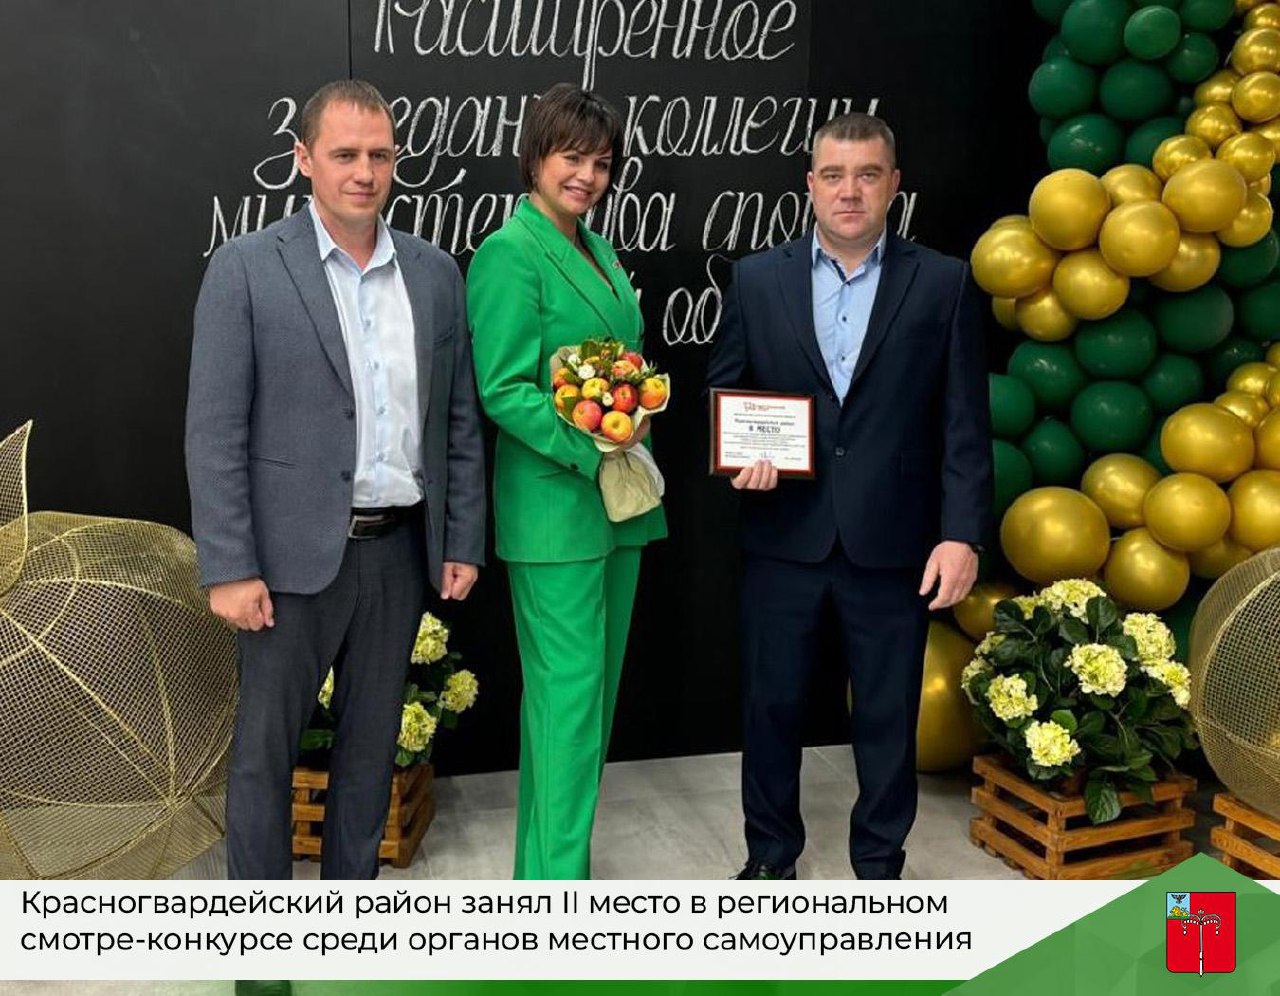 Красногвардейский район занял II место в региональном смотре-конкурсе среди органов местного самоуправления Белгородской области.